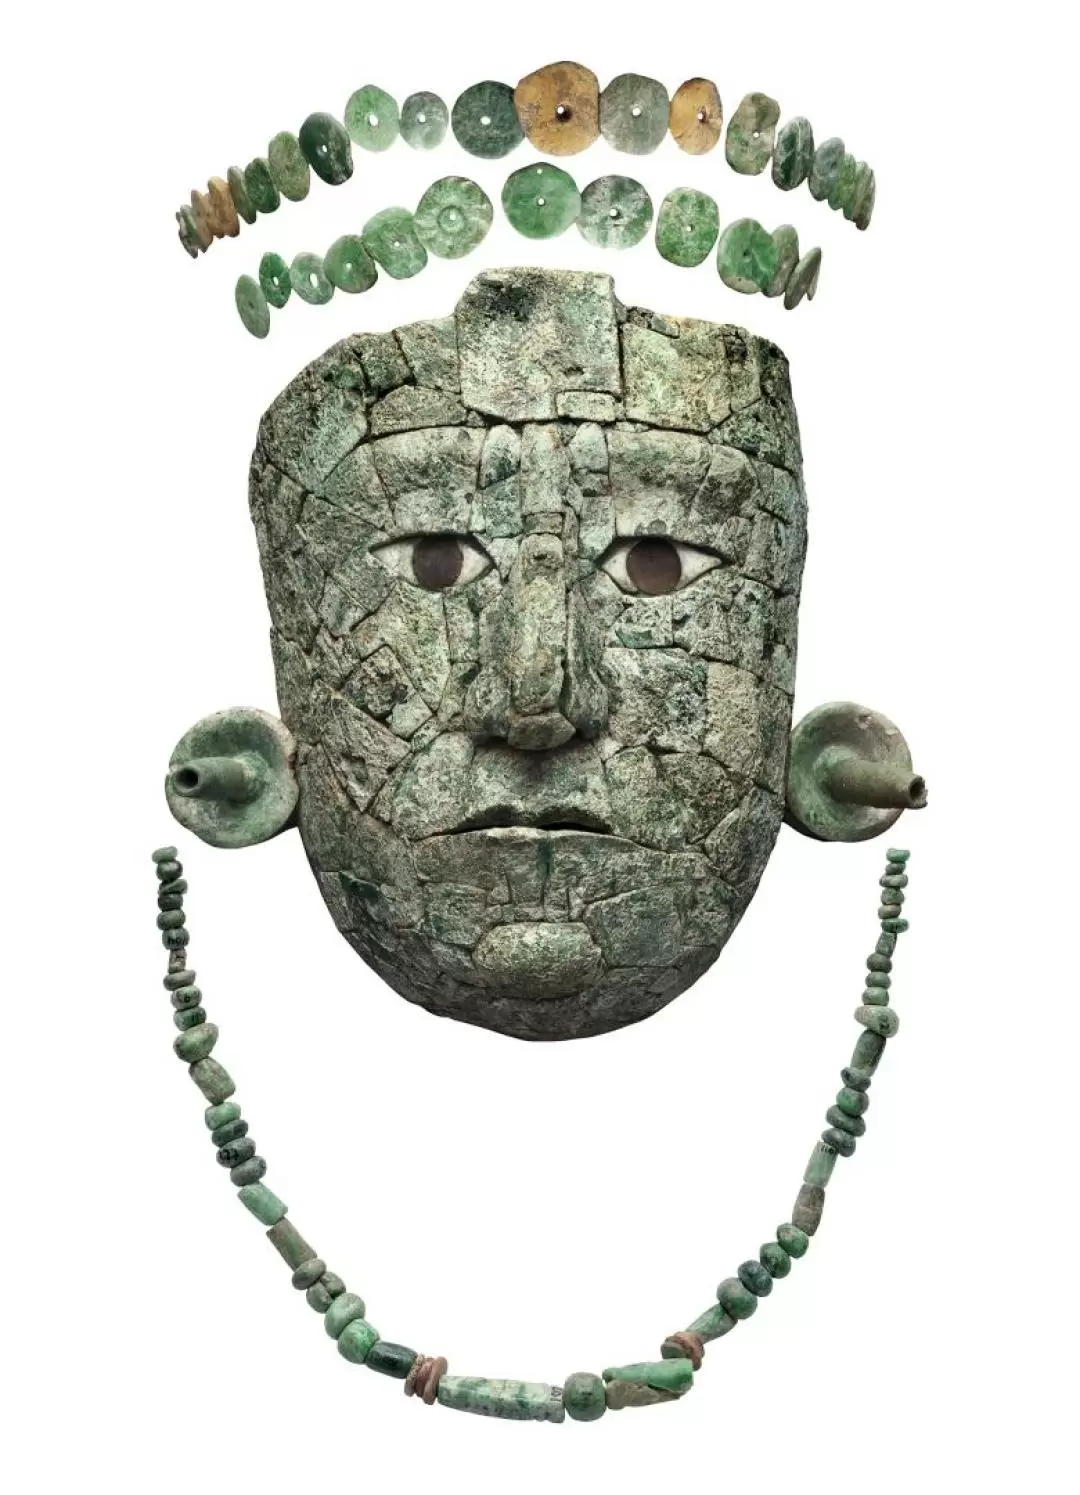 東京國立博物館特別展覽Ancient Mexico:Maya,Aztecs, and Teotihuacan”